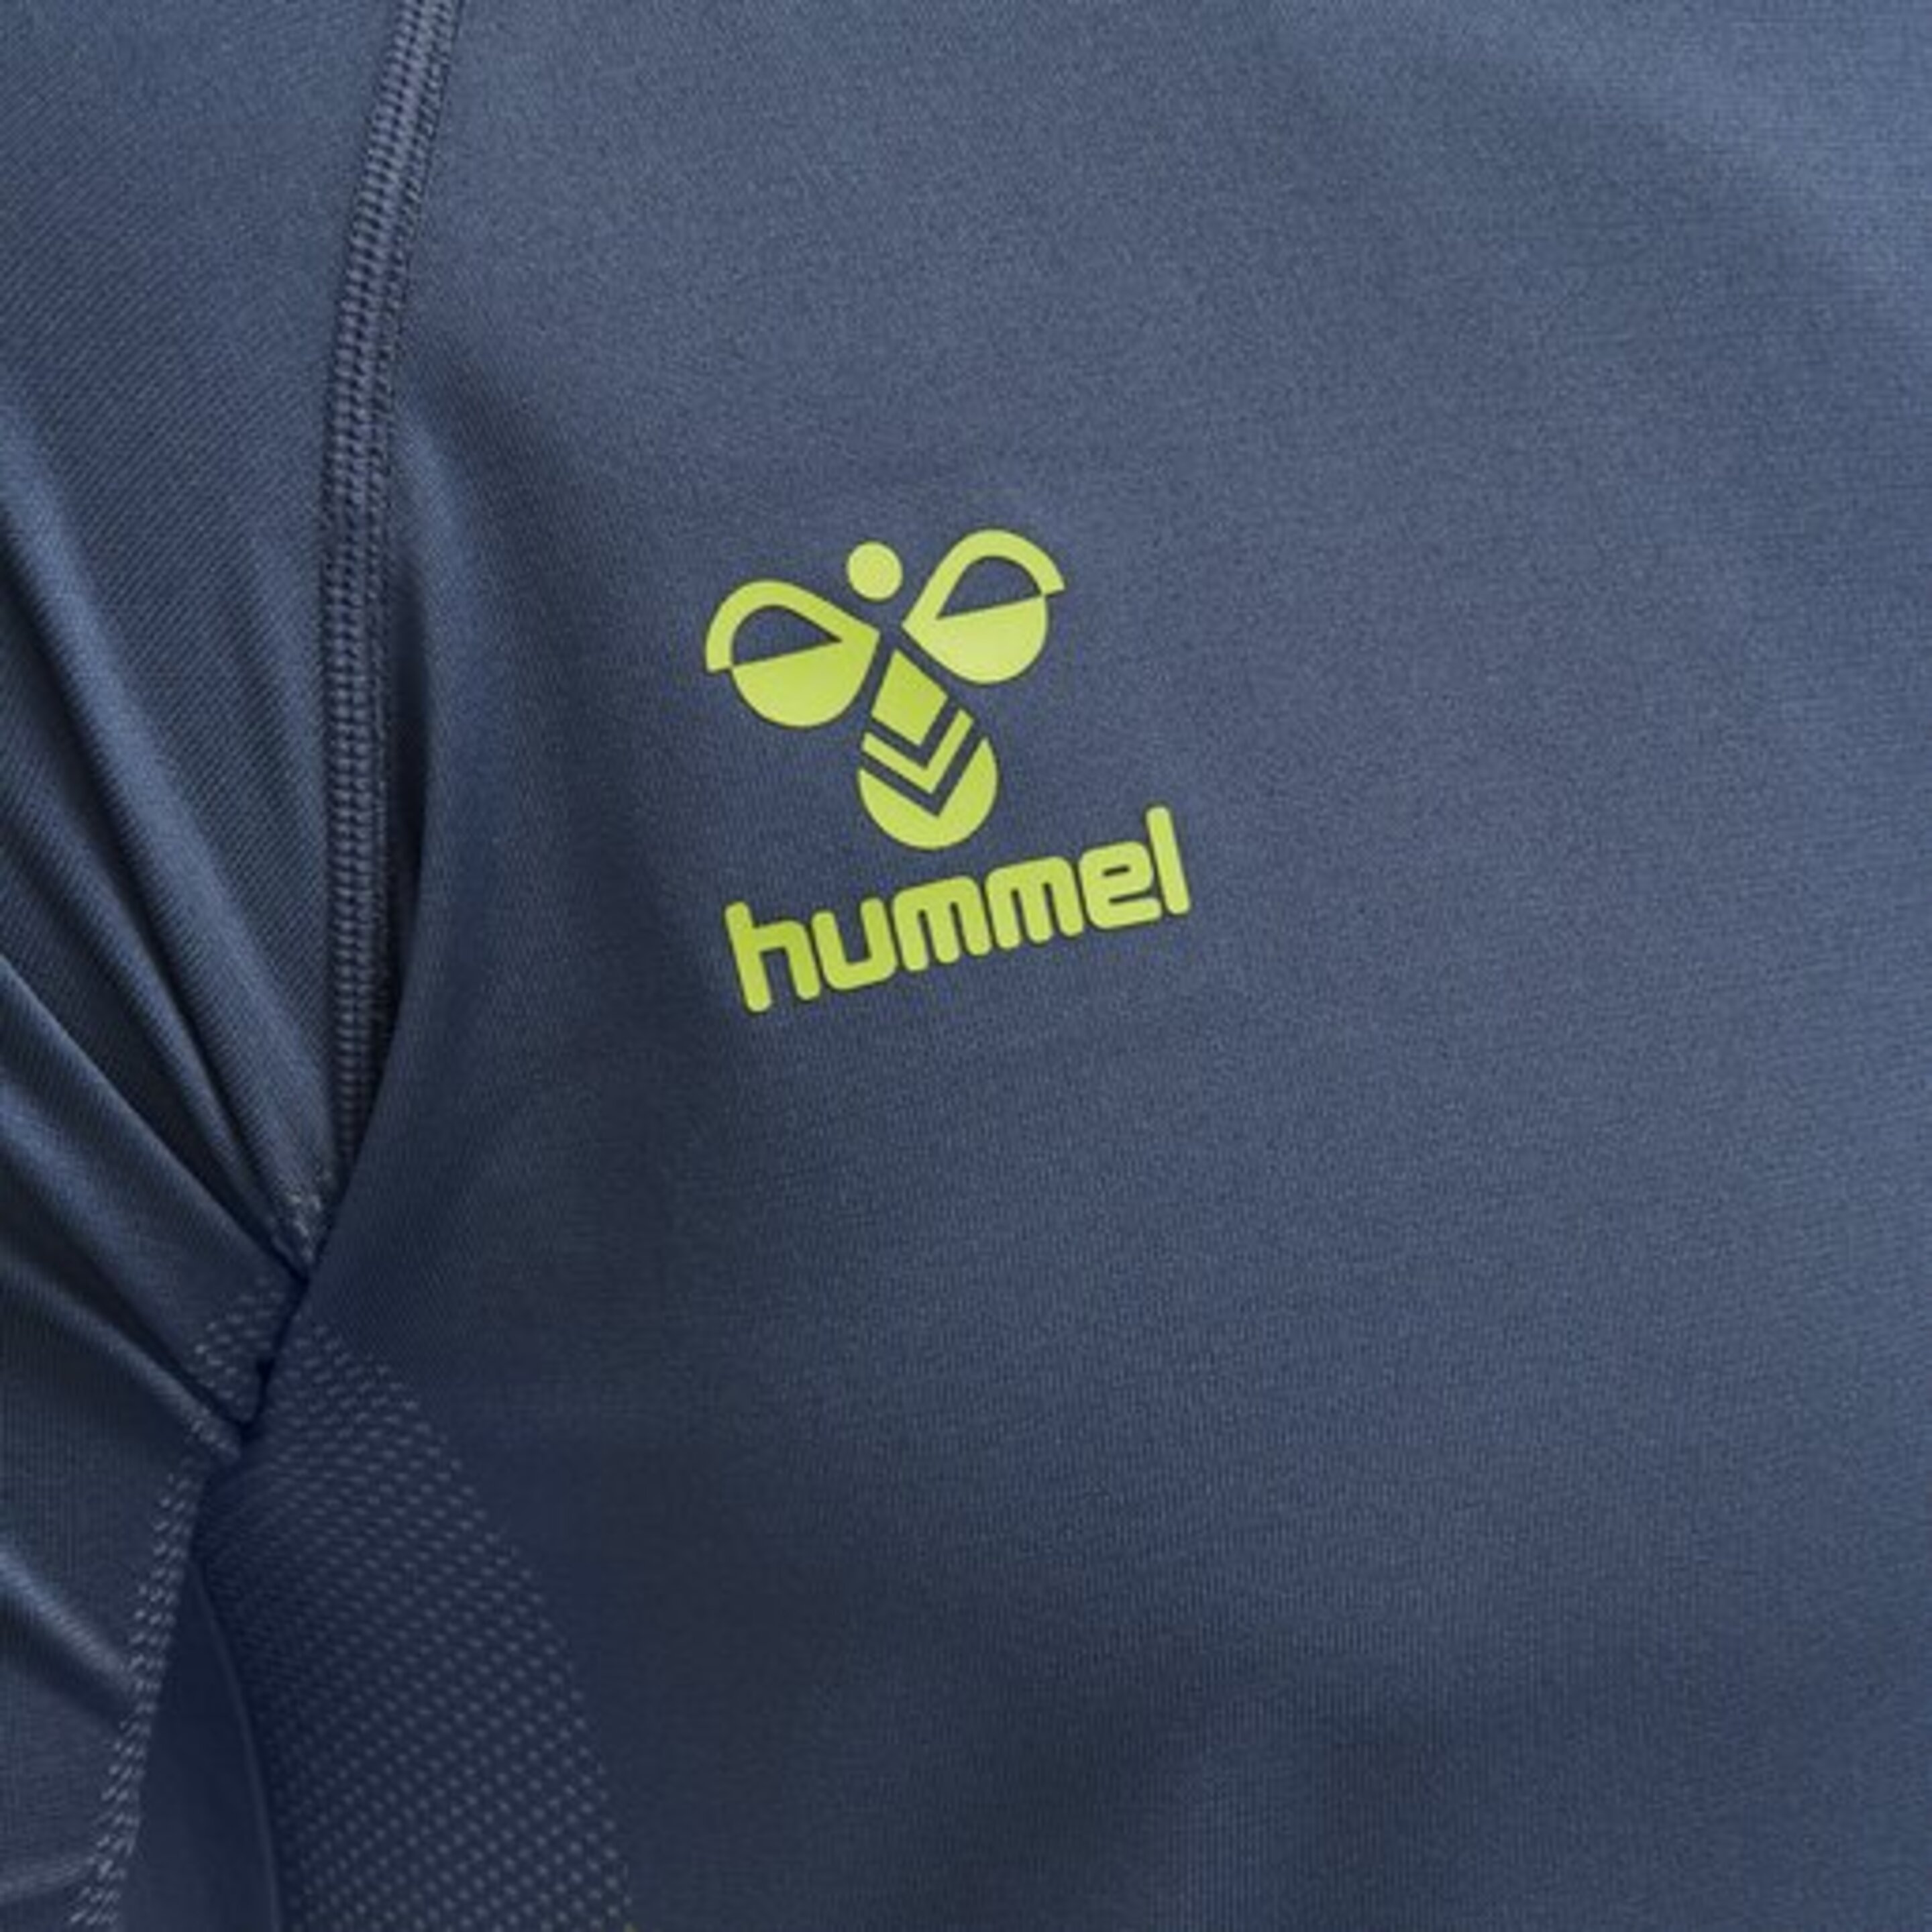 Camiseta Entrenamiento Hummel